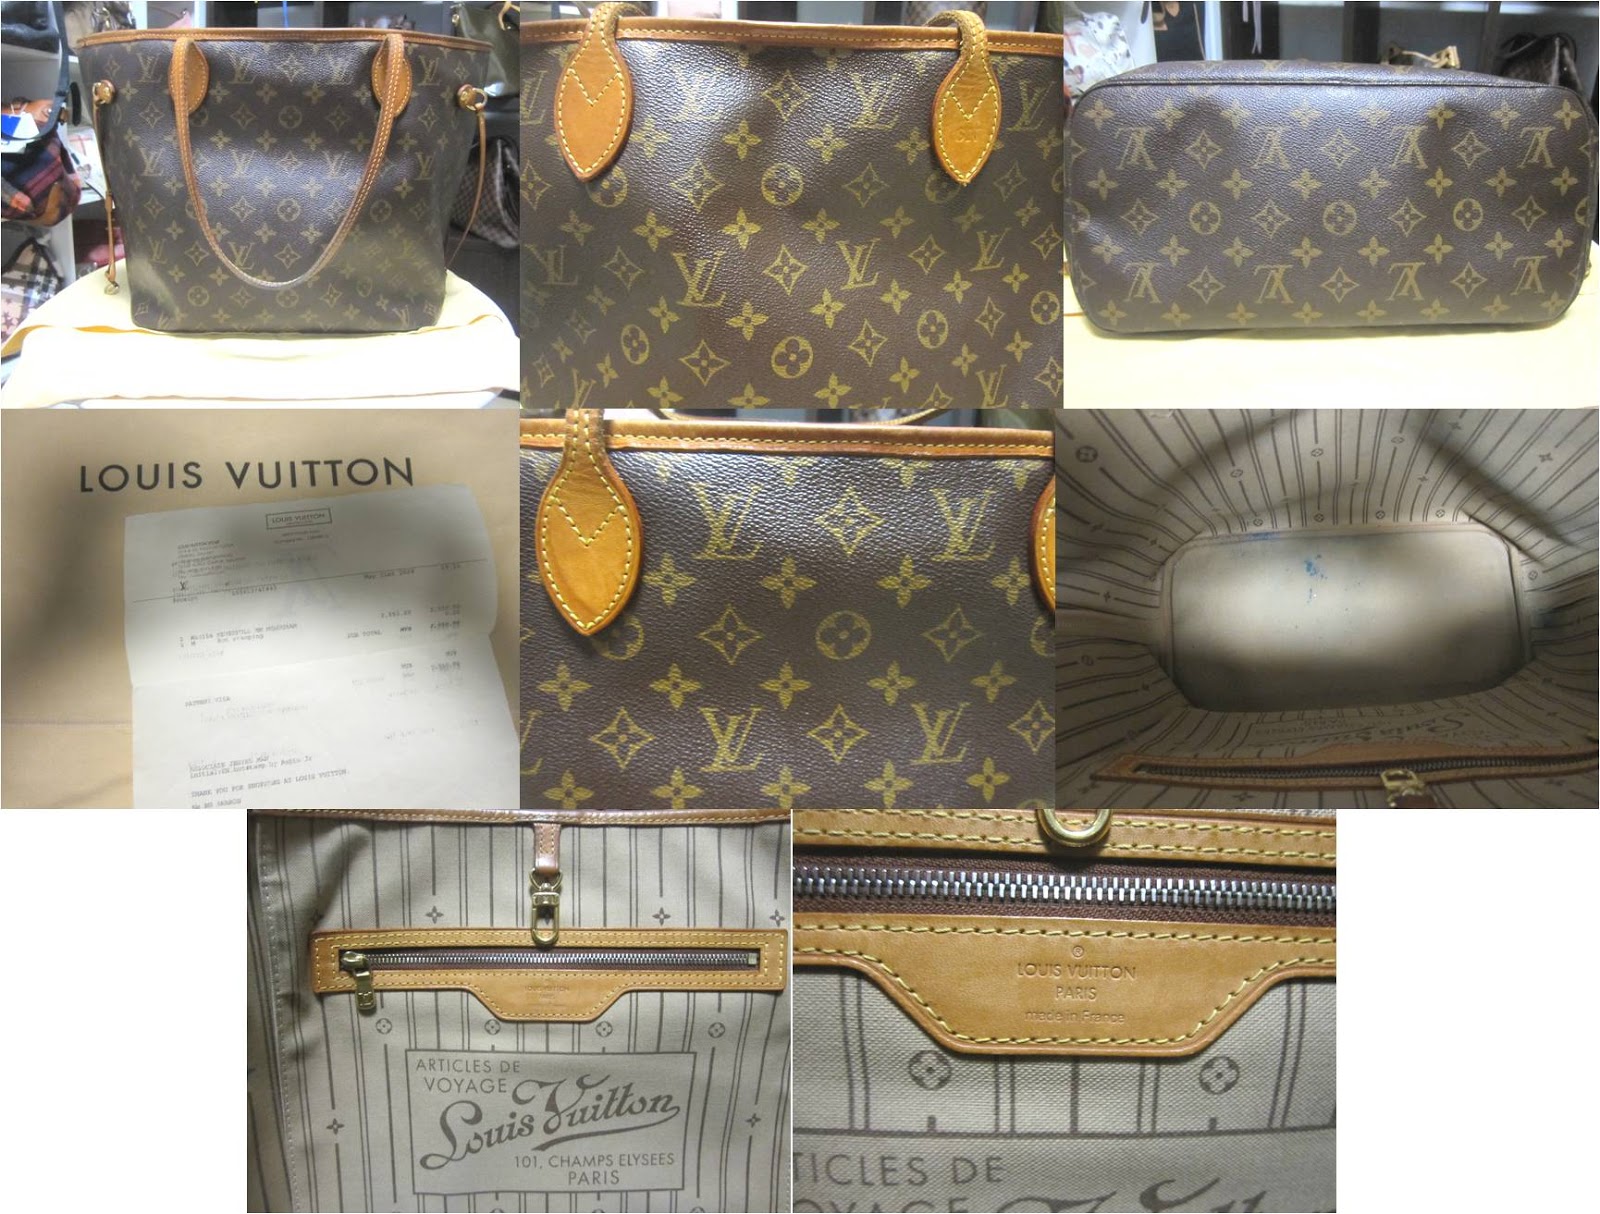 Louis Vuitton, Bags, Lv Articles De Voyage Louis Vuitton 1 Champs Elysees  Paris Neverfull